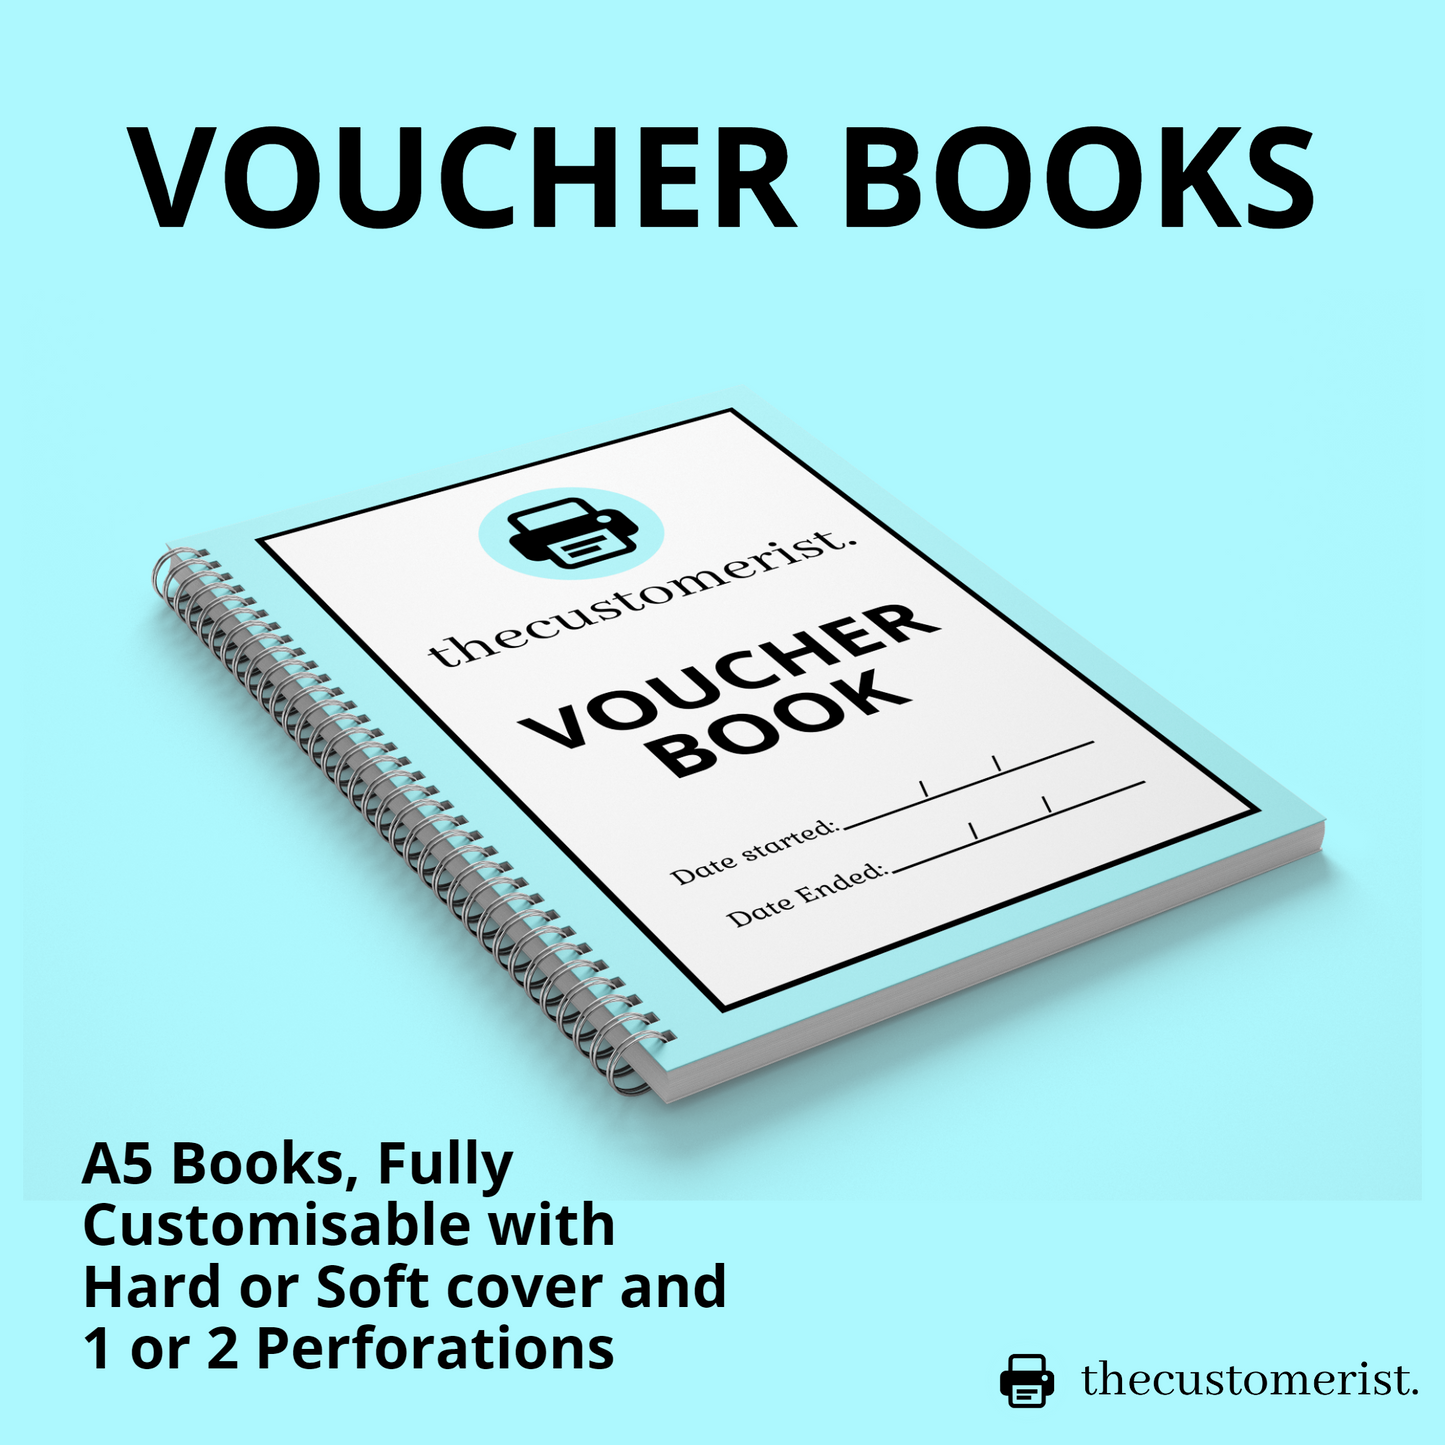 Voucher Books - A5